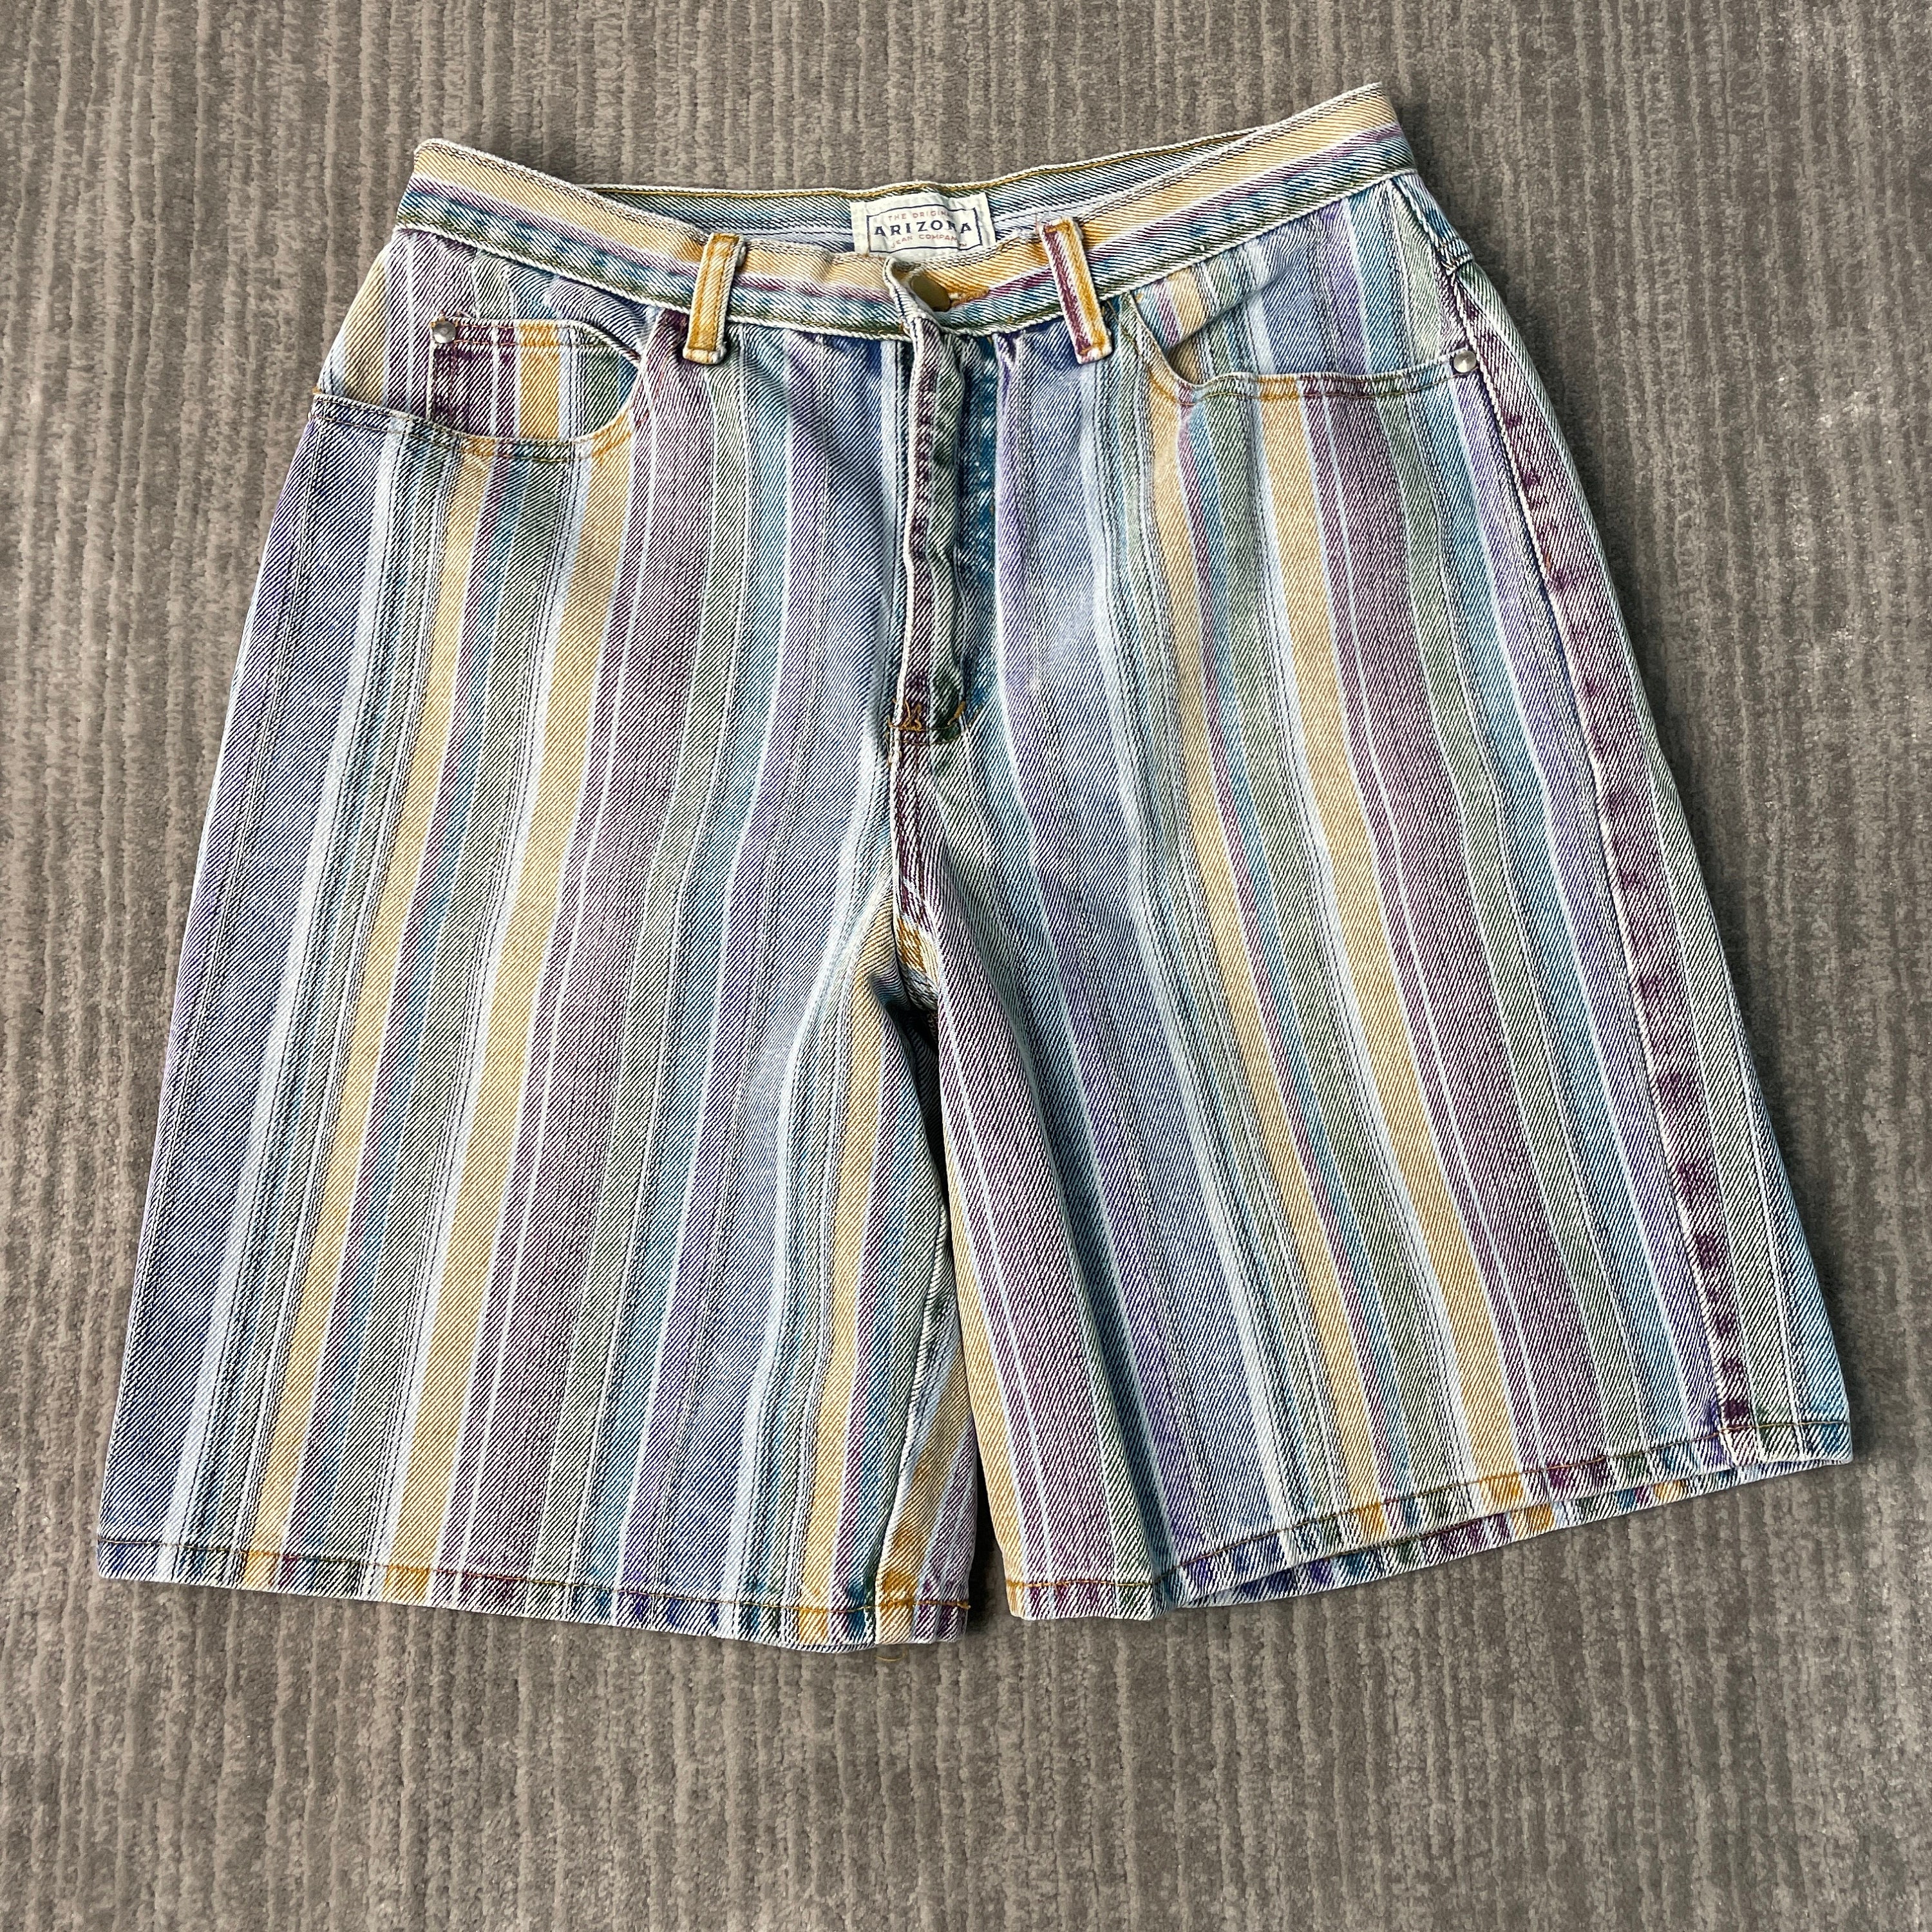 Etsy Jeans Shorts - Arizona